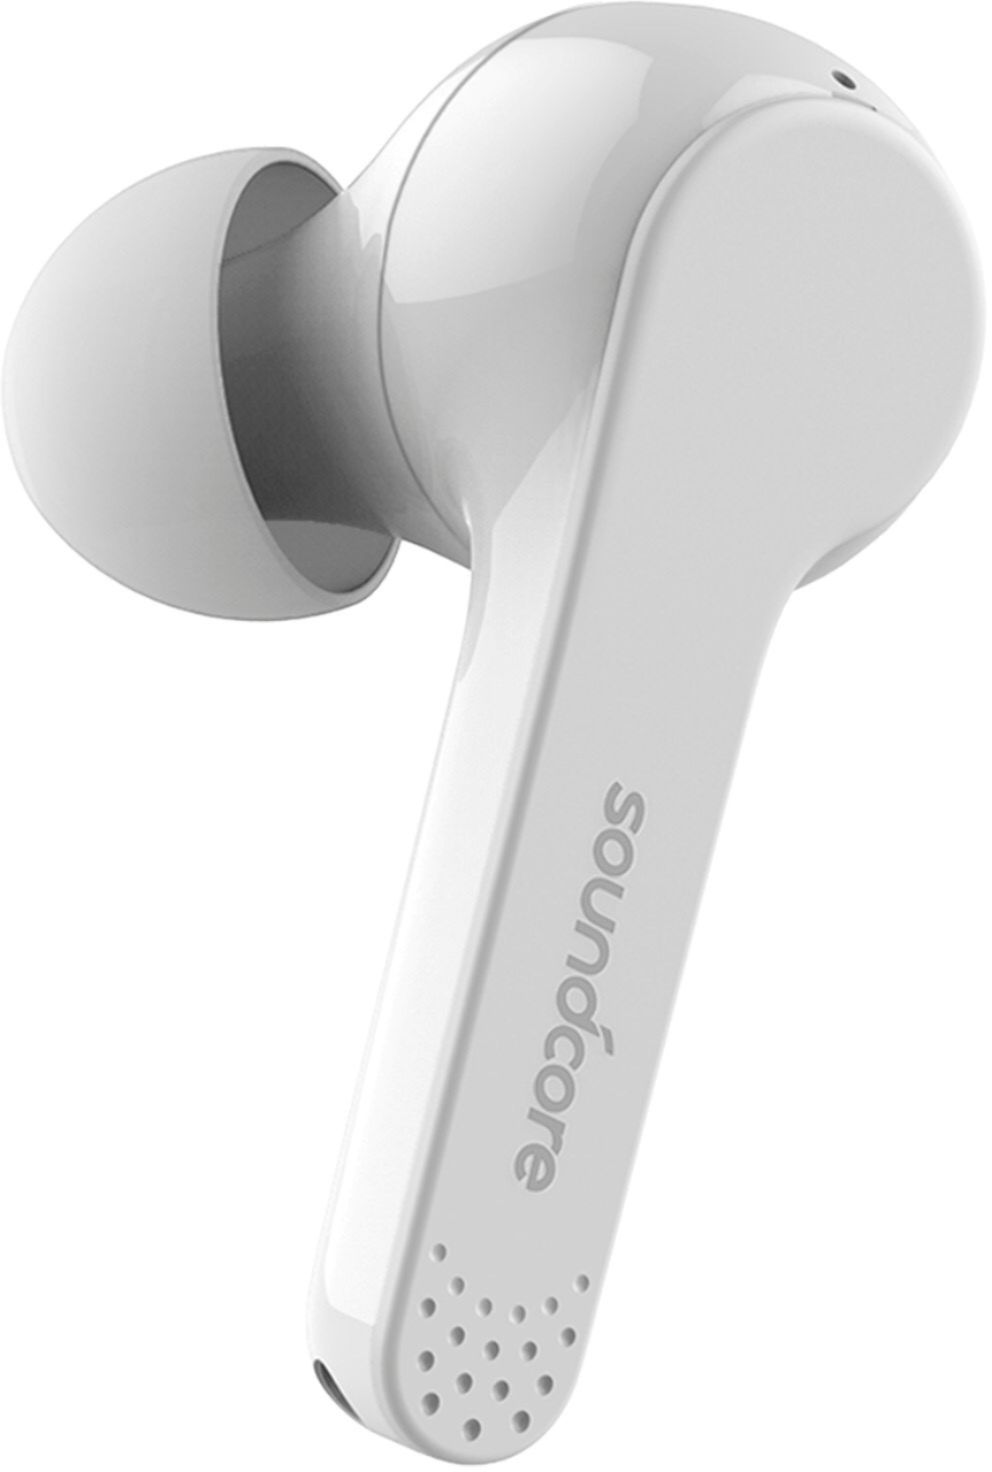 Best Buy: Anker Soundcore Liberty Air True Wireless In-Ear 